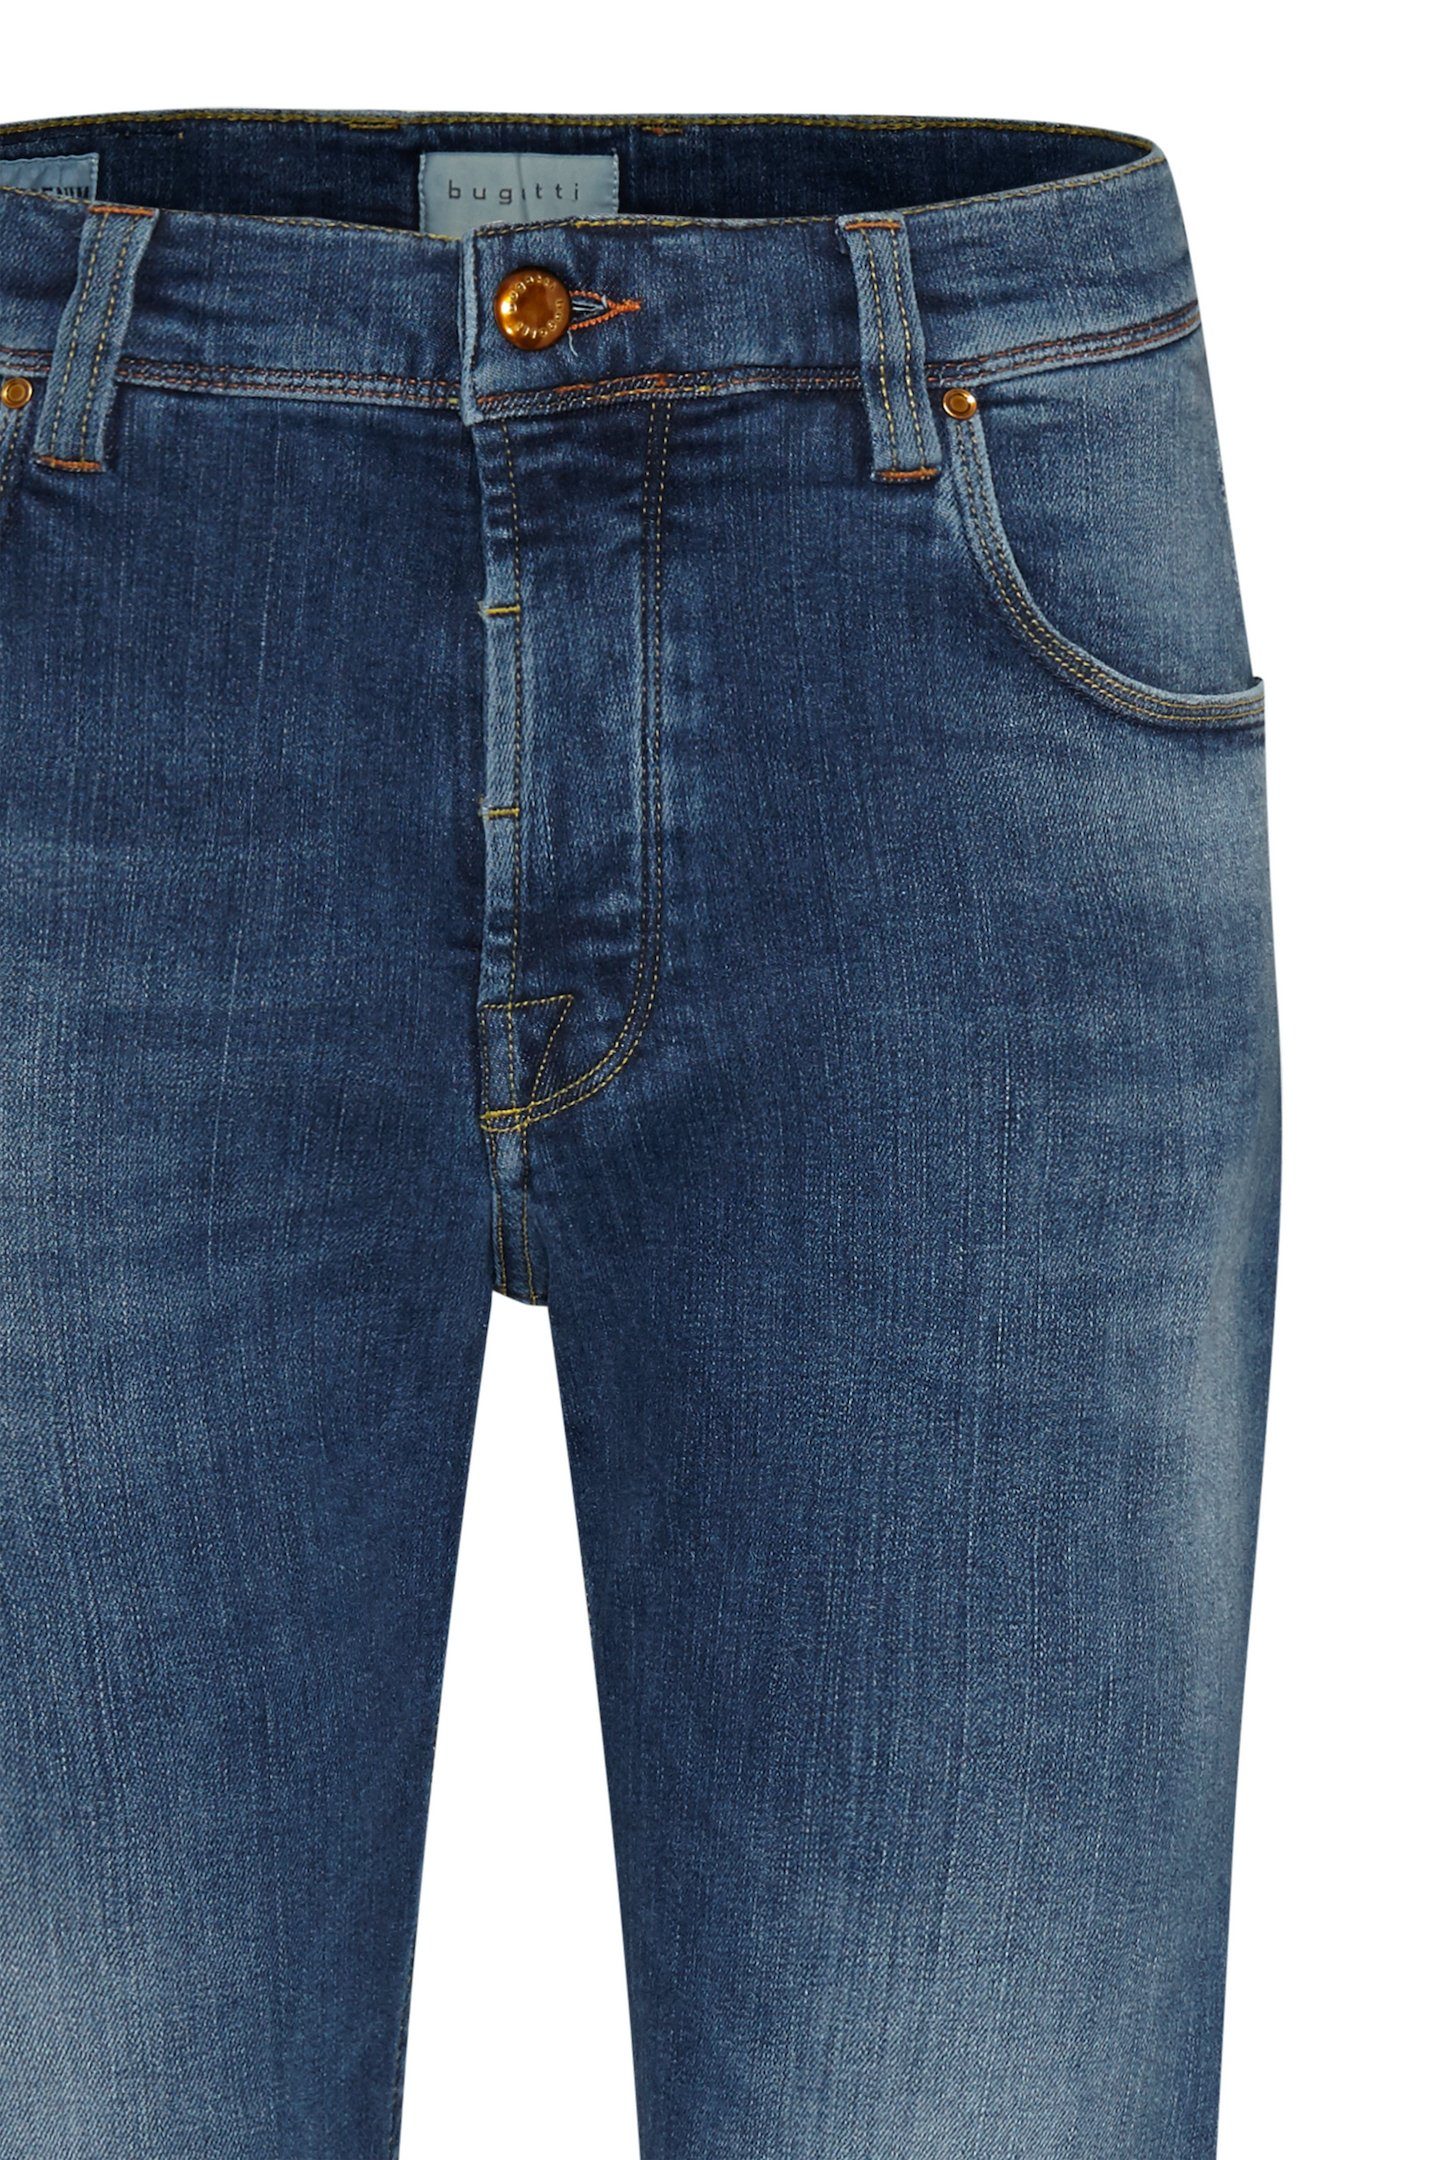 Waschung mit bugatti 5-Pocket-Jeans vintage